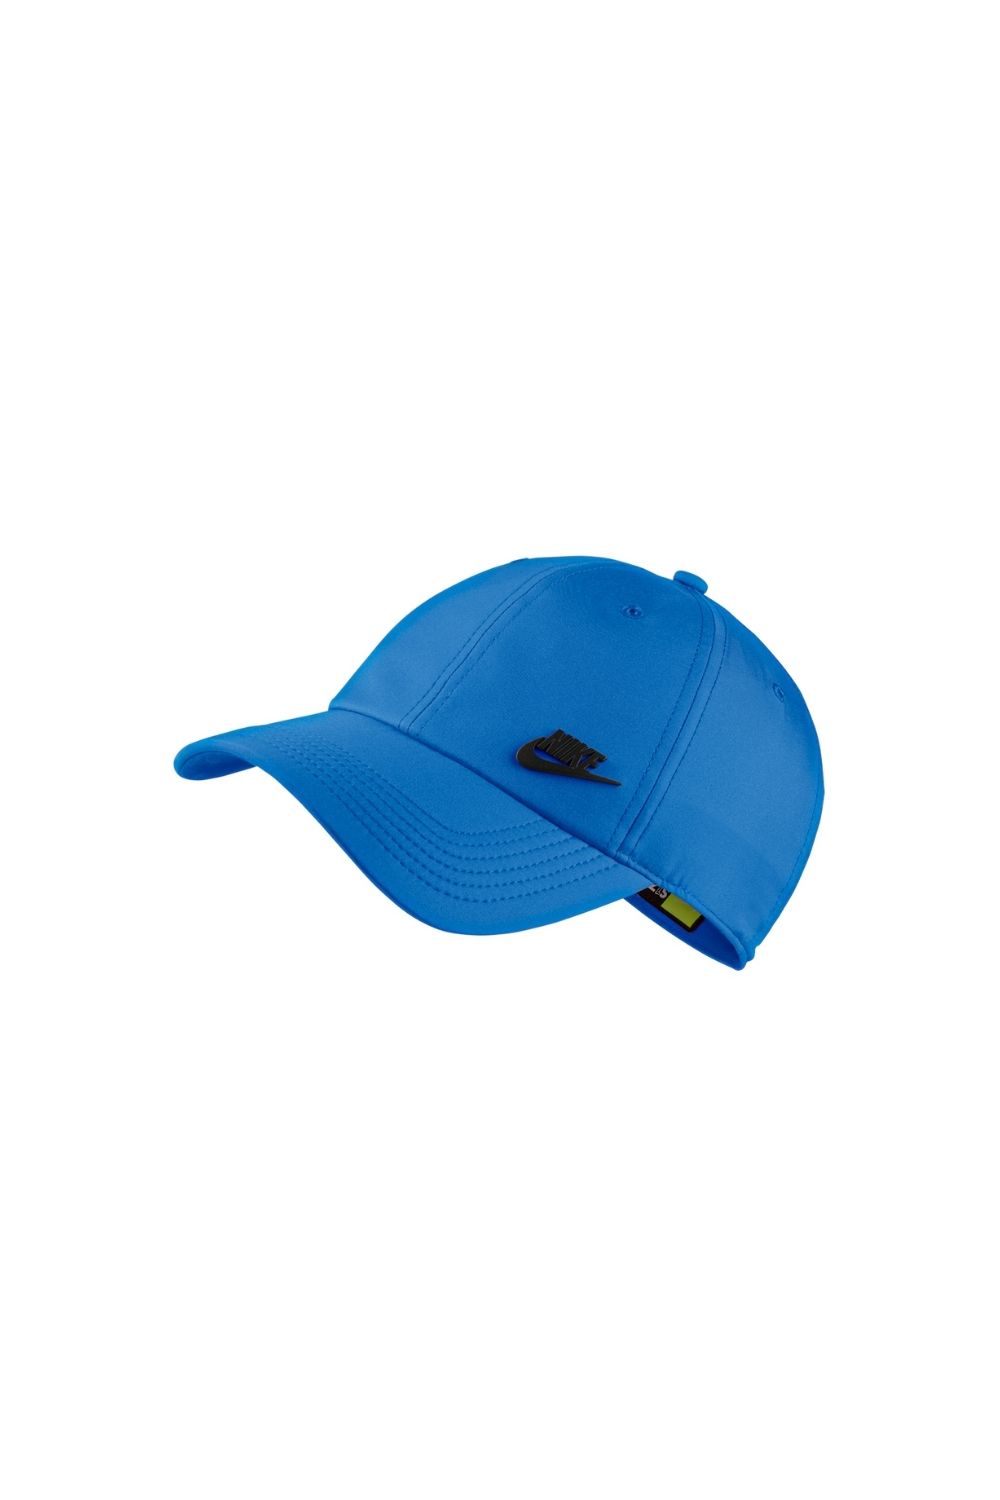 Γυναικεία/Αξεσουάρ/Καπέλα/Αθλητικά NIKE - Unisex καπέλο NIKE AROBILL H86 μπλε